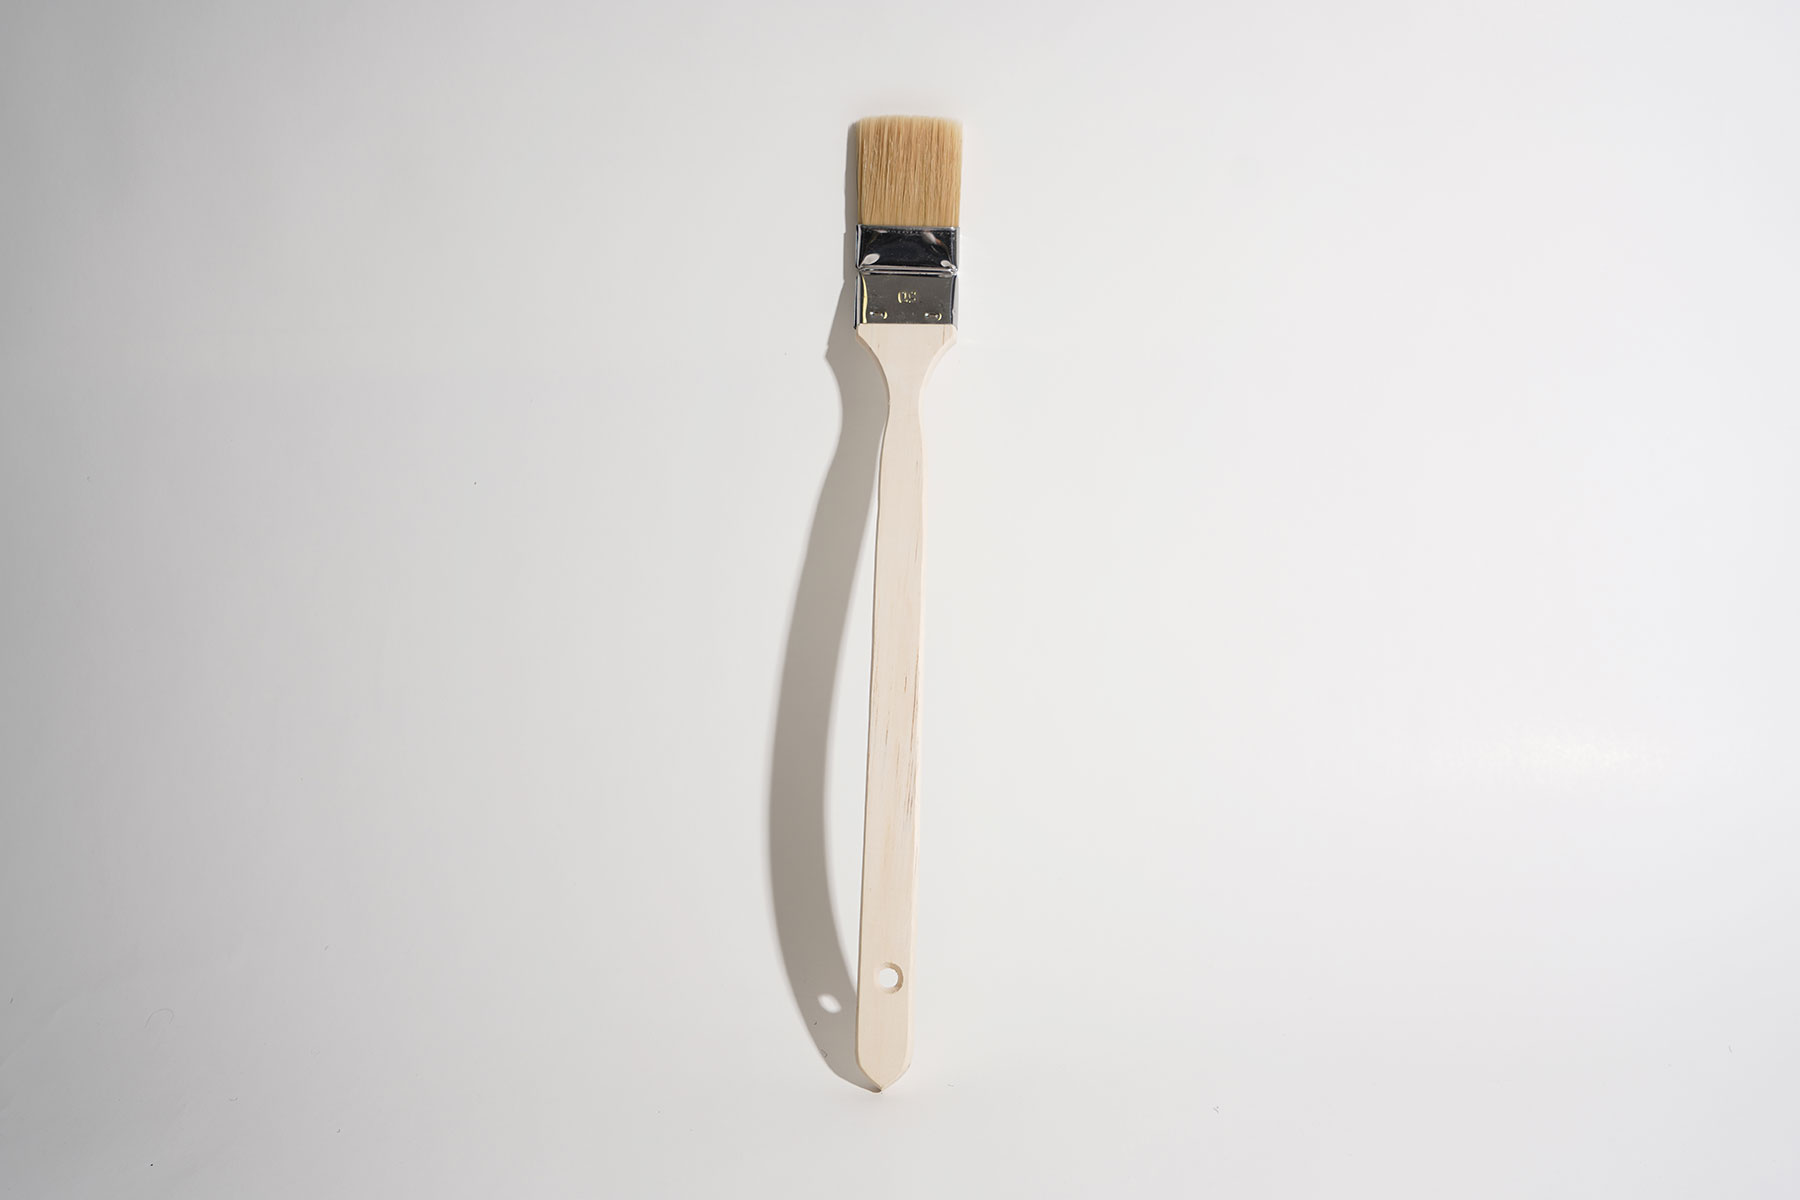             Pinceau d'angle 5cm, long manche en bois pour travaux de peinture
        